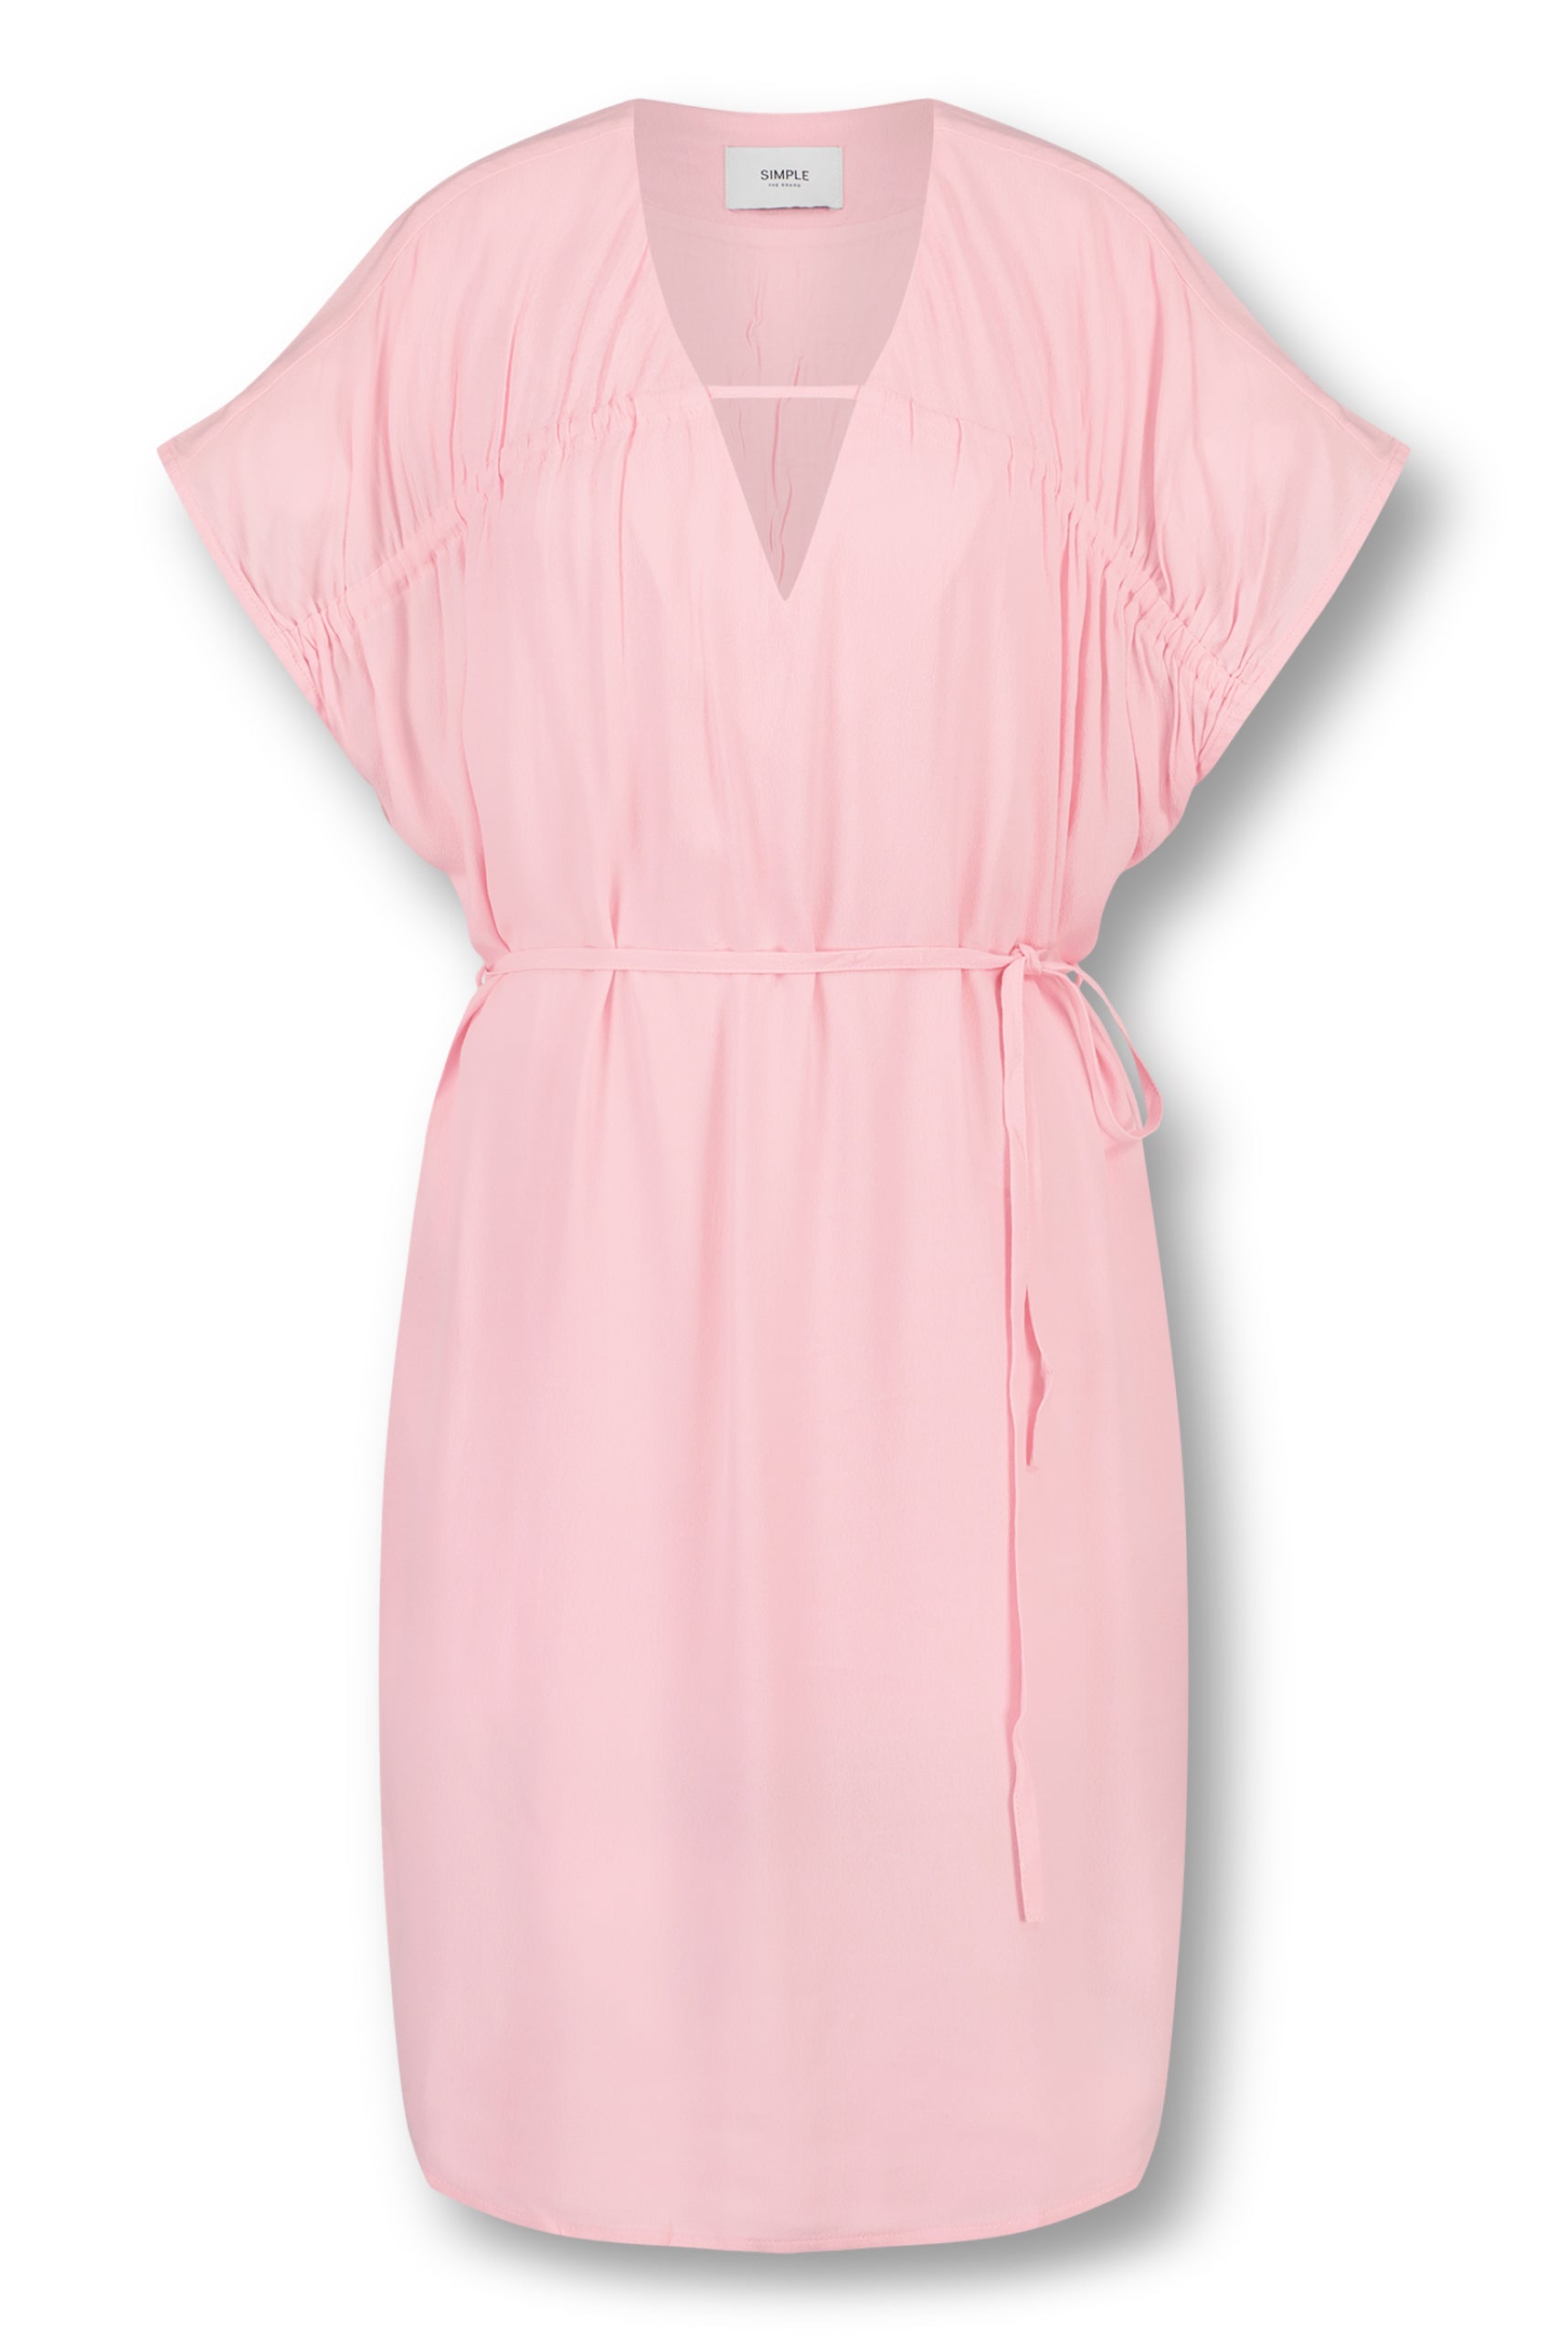 Kass Dress - Pink - Packshot - Dress - Simple